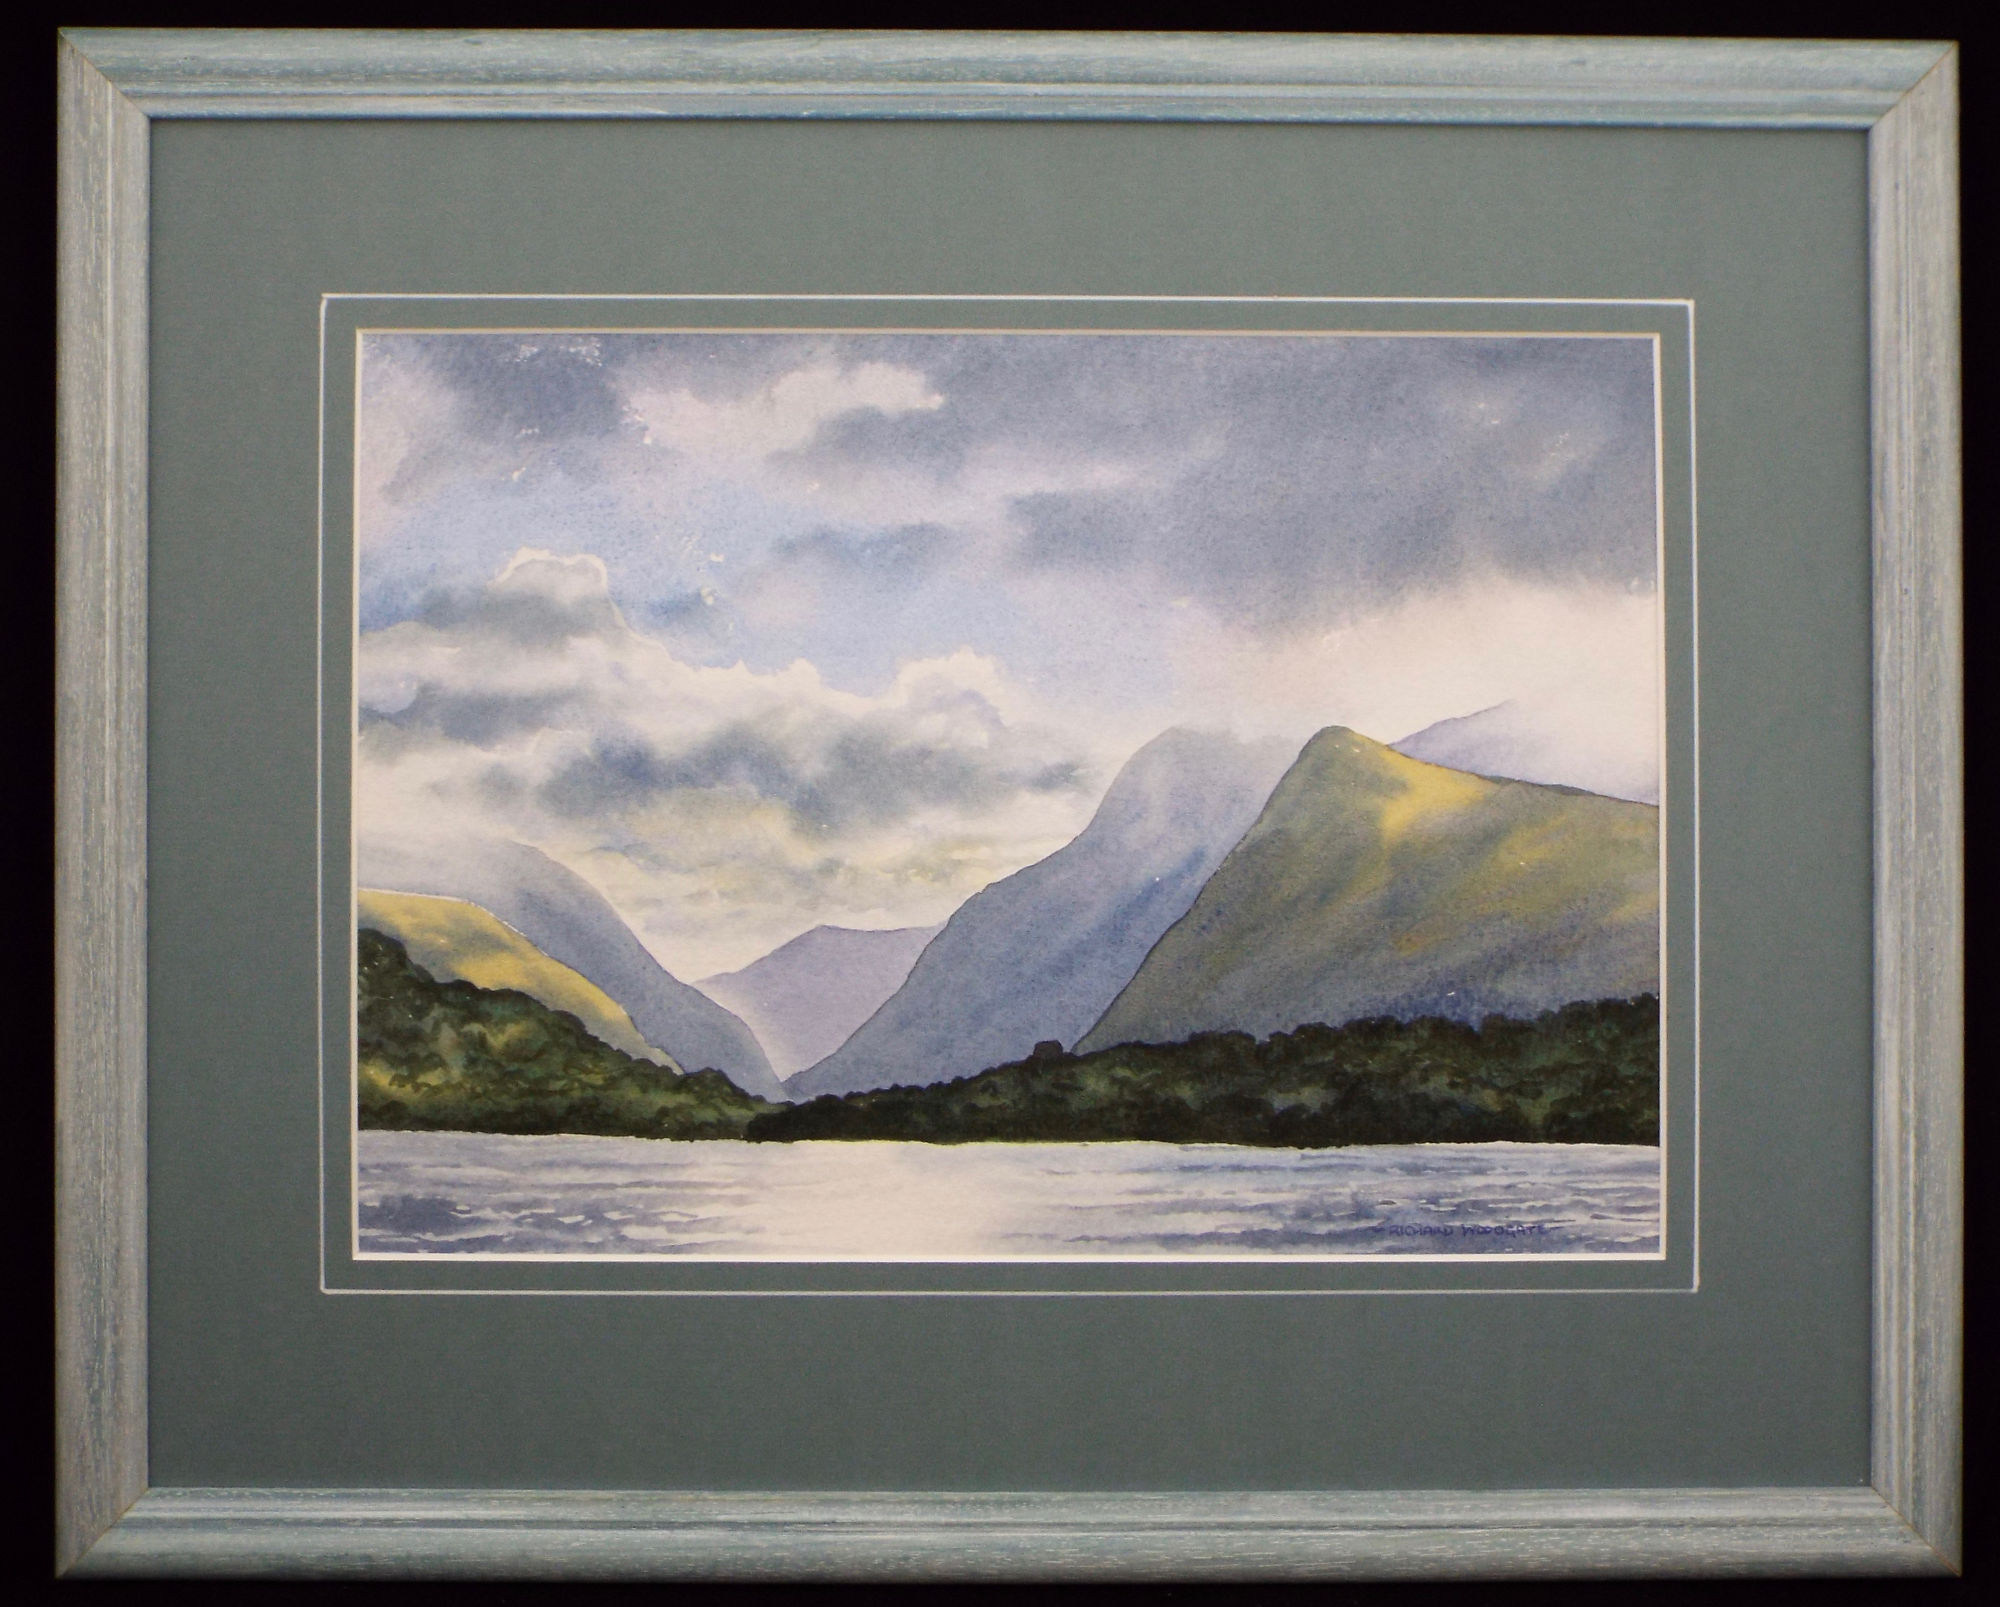 Llyn Padarn Snowdonia by Richard Woodgate.